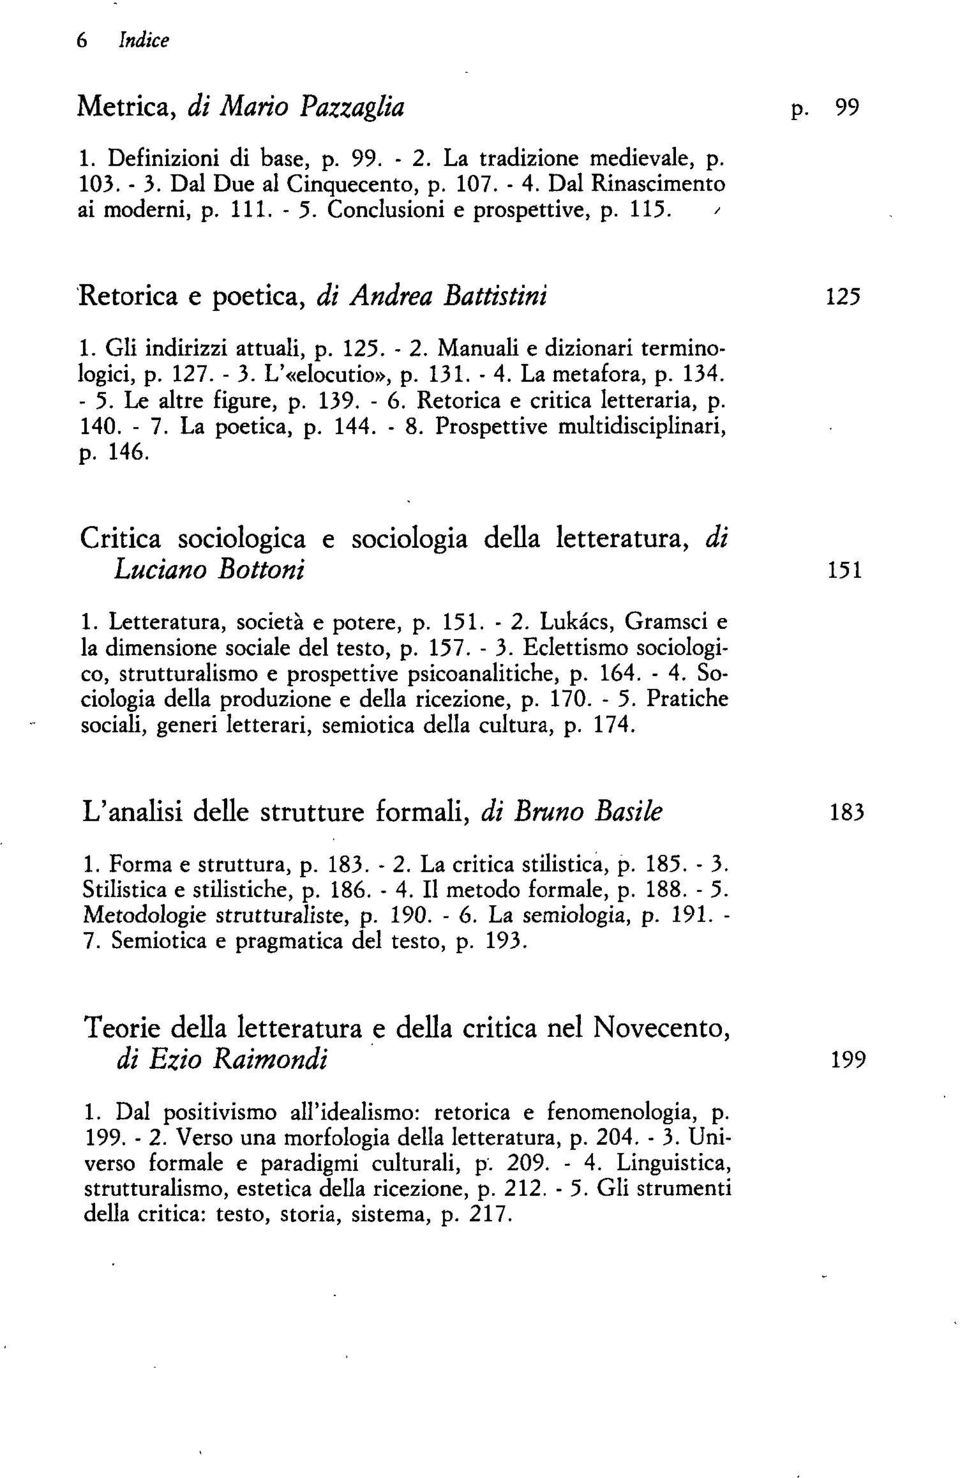 La metafora, p. 134. - 5. Le altre figure, p. 139. - 6. Retorica e critica letteraria, p. 140. - 7. La poetica, p. 144. - 8. Prospettive multidisciplinari, p. 146.